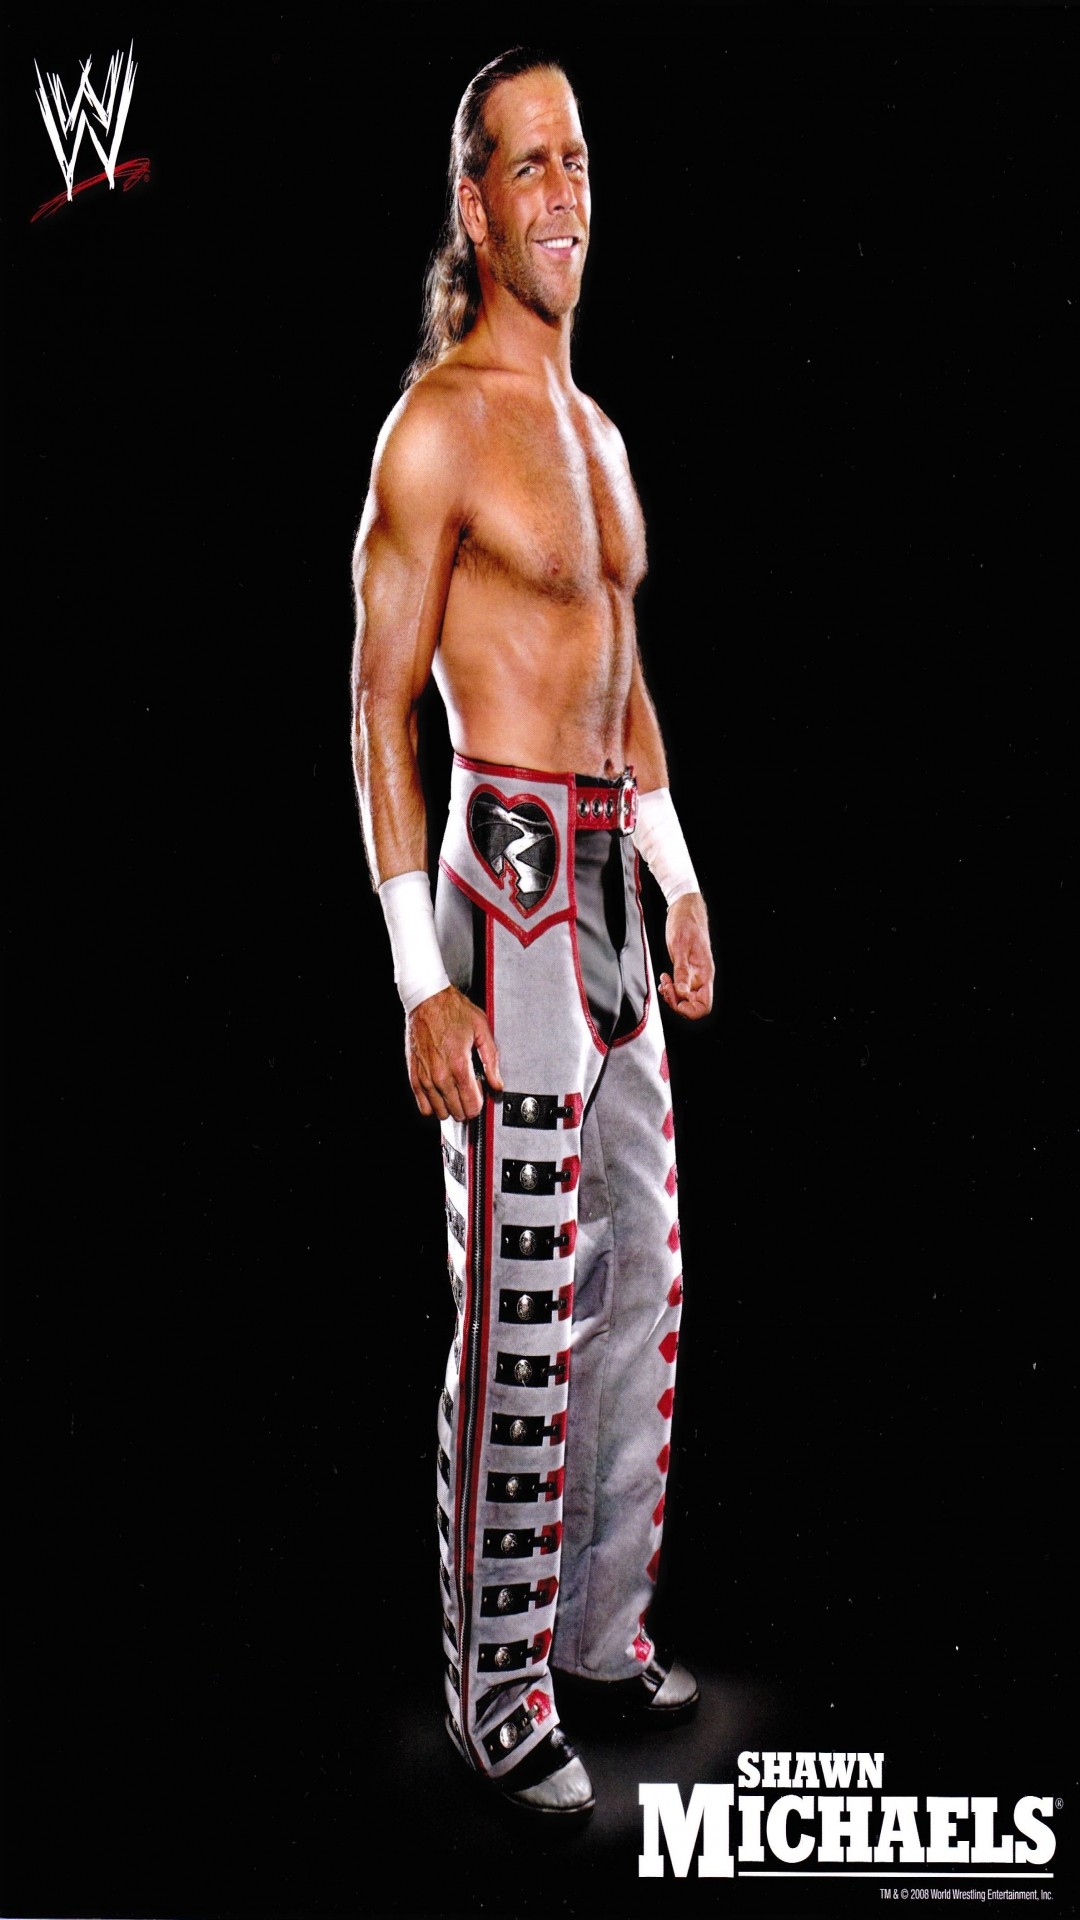 2560x1440, Wwe Famous Wrestler Shawn Michaels Hd Wallpapers - Wwe Shawn Michaels 2008 , HD Wallpaper & Backgrounds